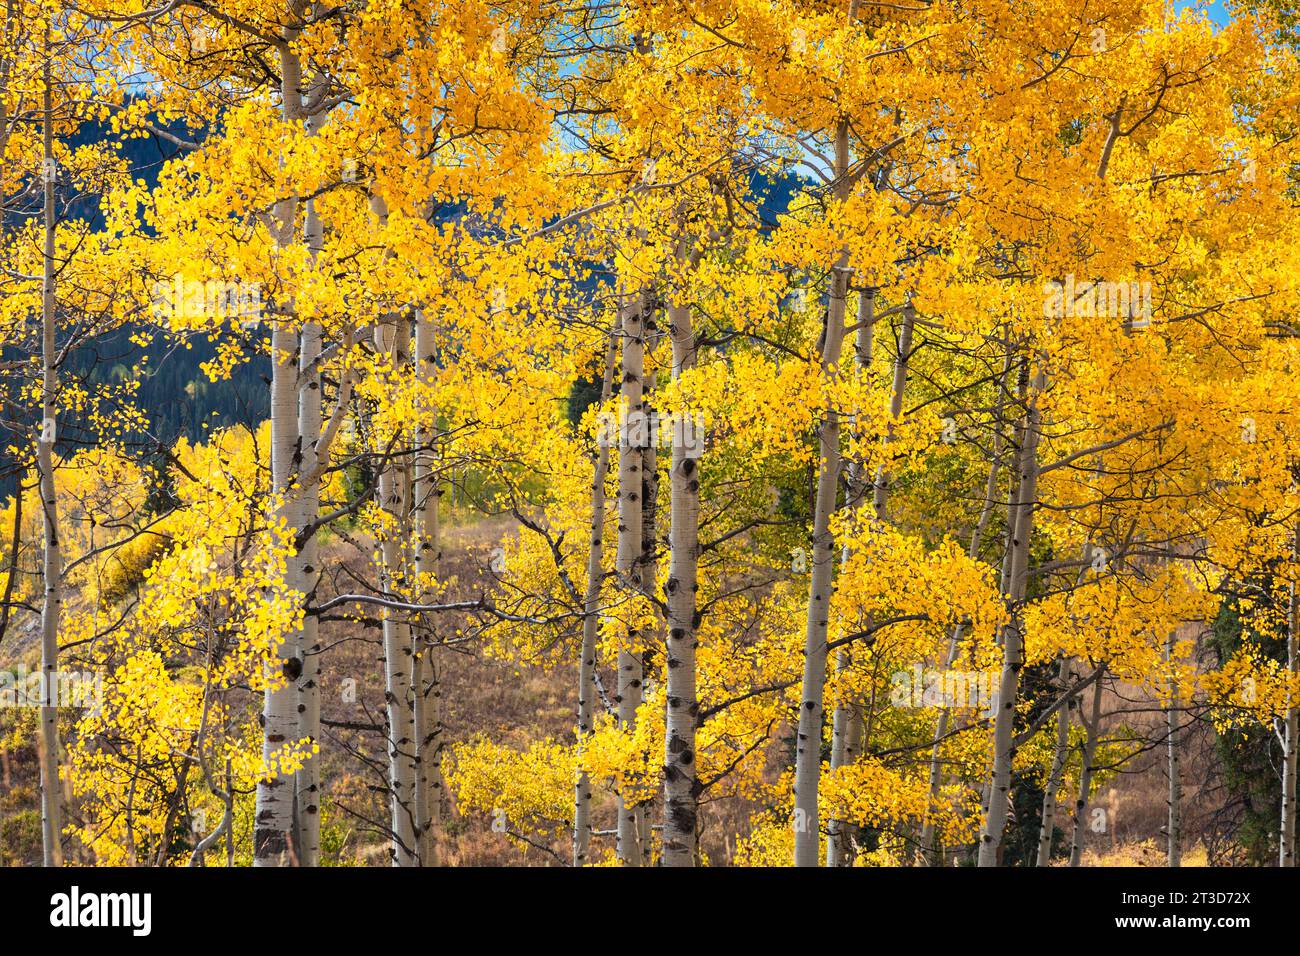 Couleur d'automne avec Aspens tournant - le long de Kebler Pass Road à l'ouest de Crested Butte, Colorado. Une des plus grandes forêts de tremble au monde. Banque D'Images